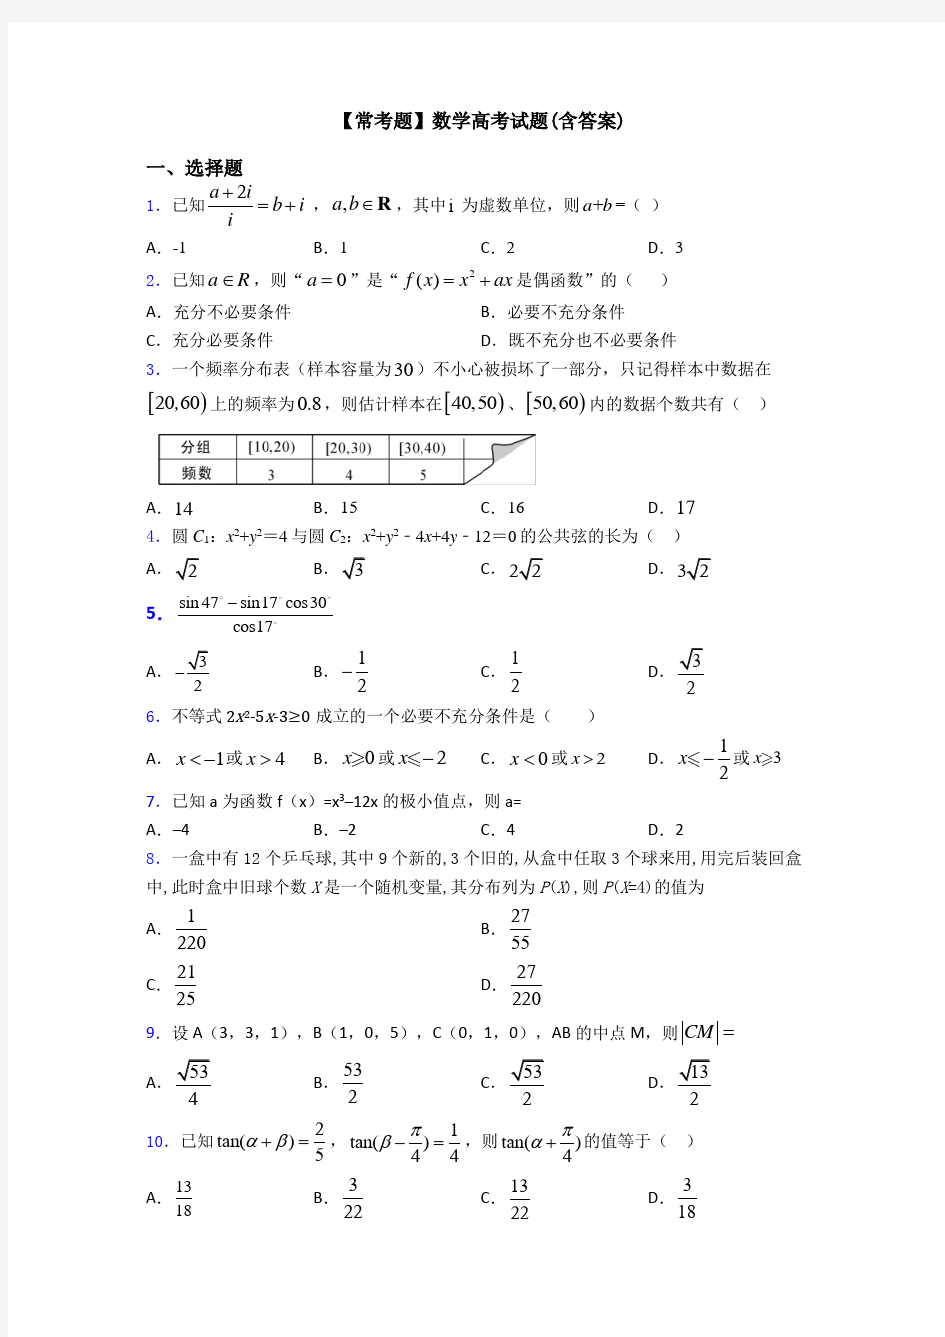 【常考题】数学高考试题(含答案)